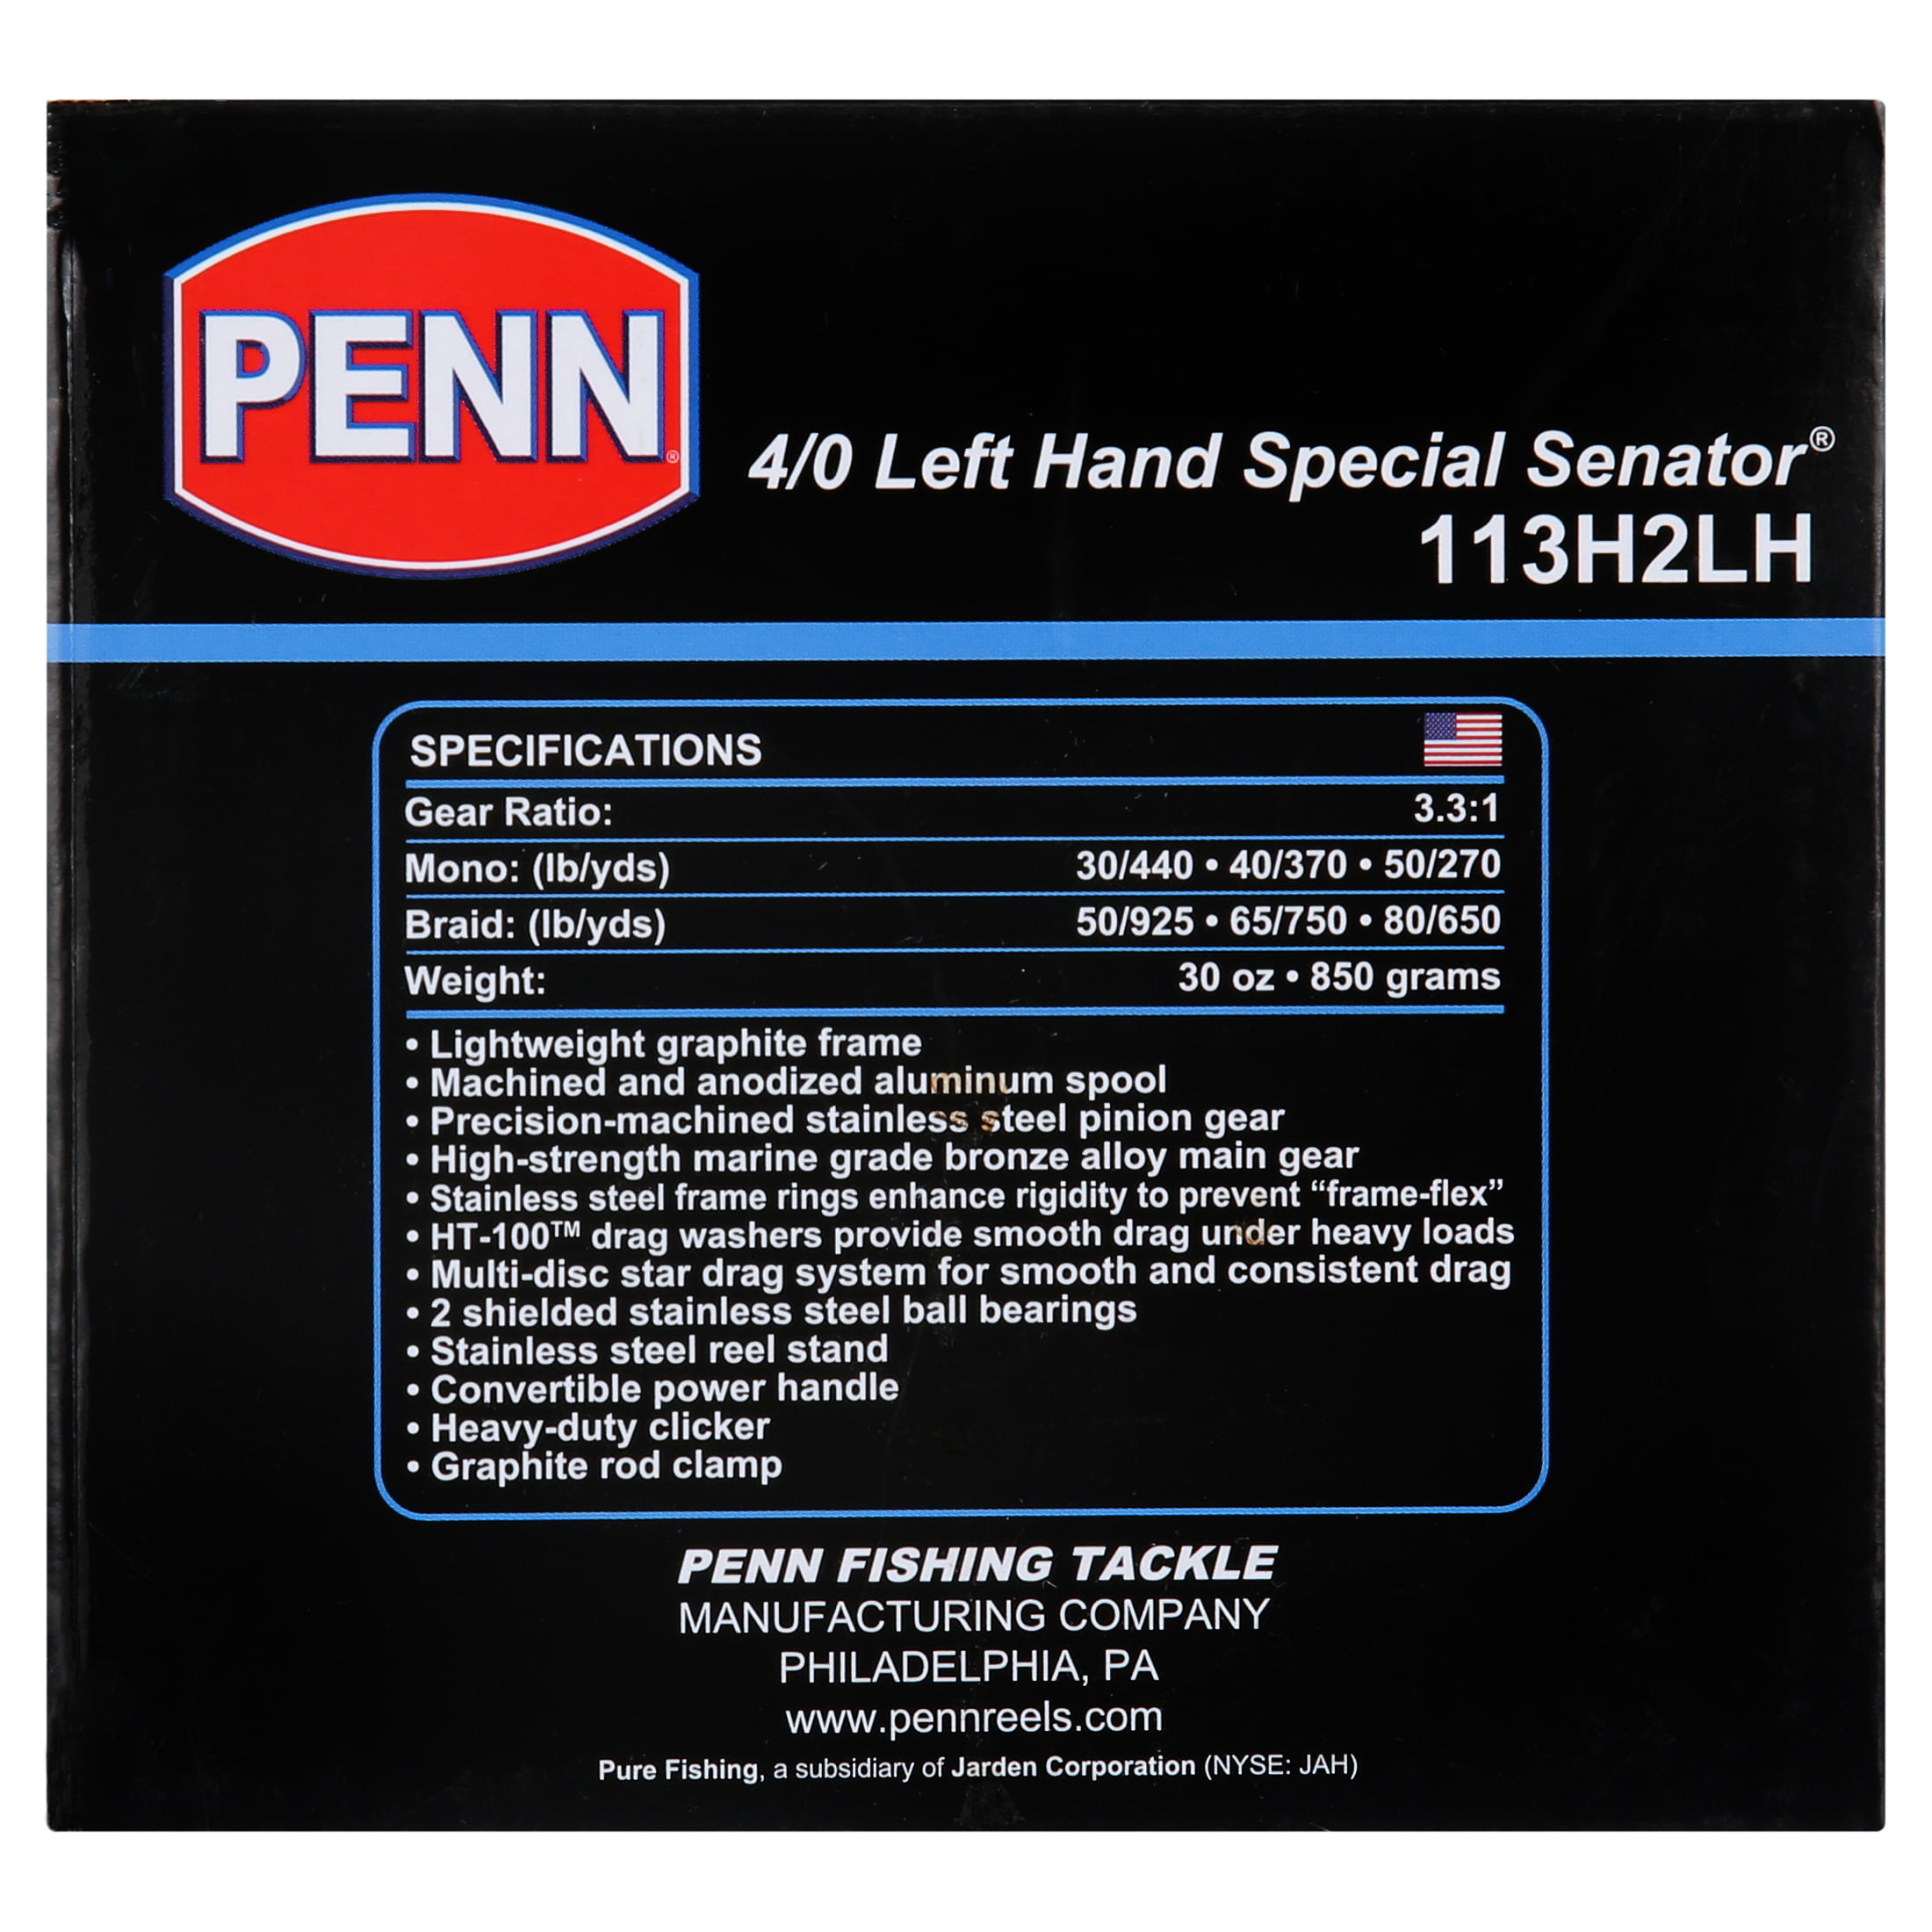 Penn 113HLH Left Hand Special Senator Reel